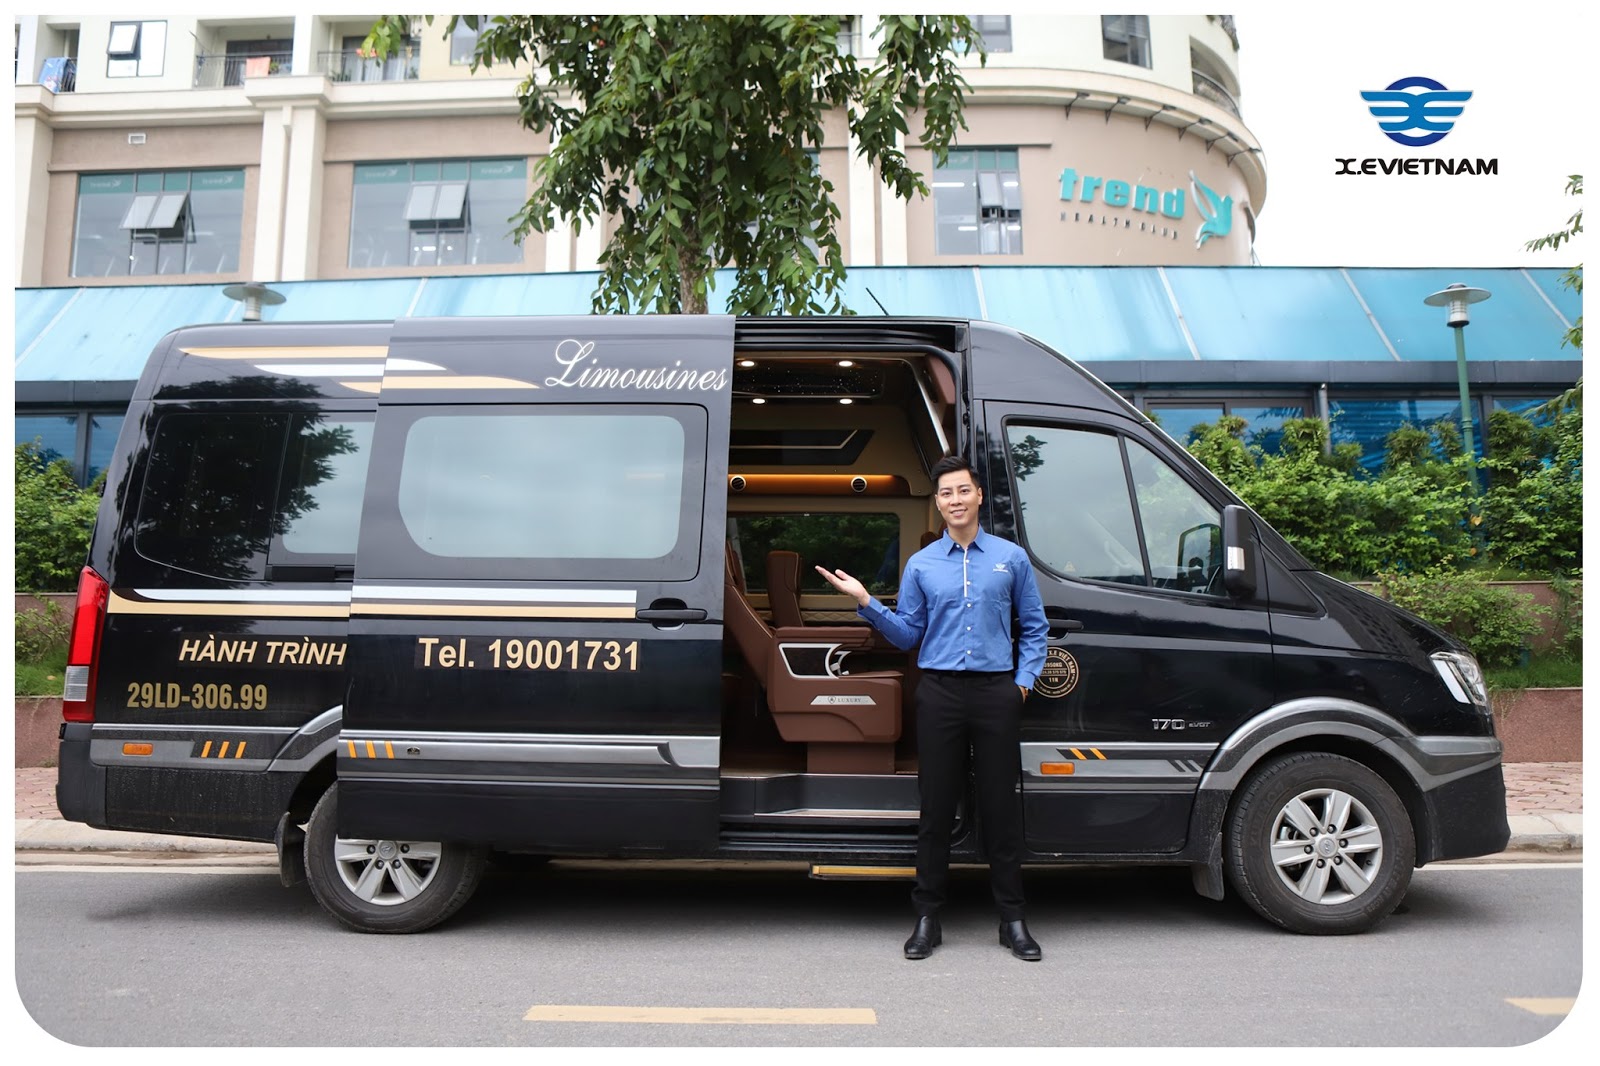 Đặt xe Limousine đi Ninh Bình: Nhà xe nào giá rẻ, phục vụ tốt nhất - xevietnam.com